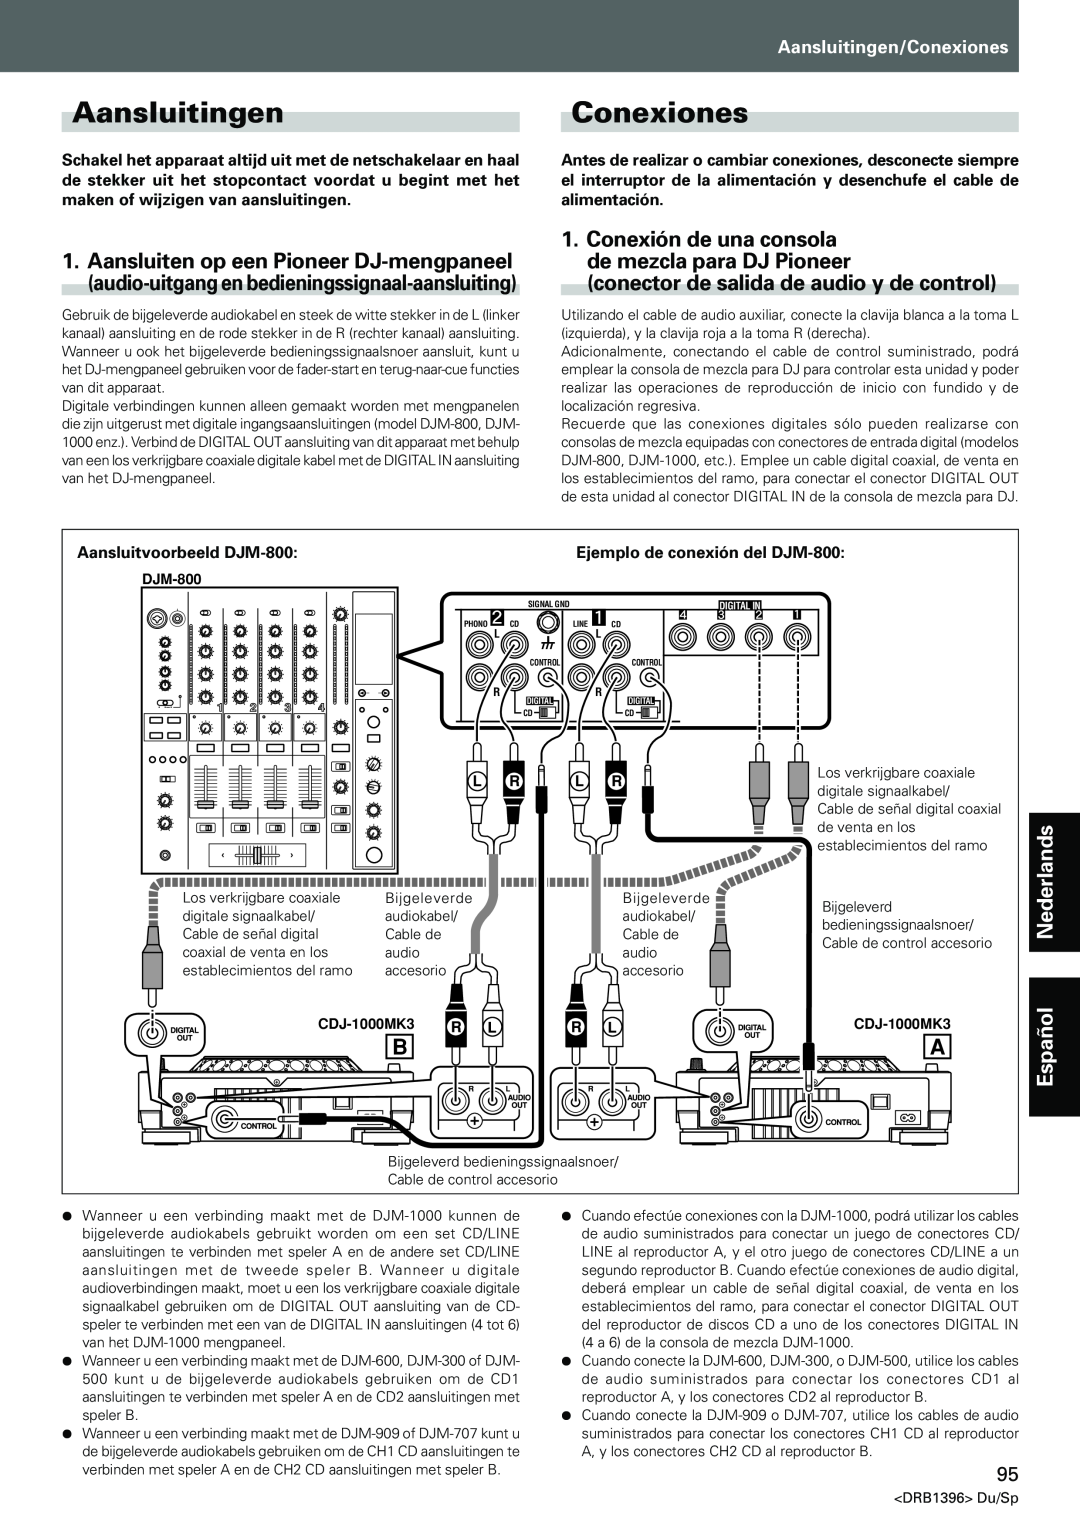 Pioneer CDJ-1000MK3 AansluitingenConexiones, conector de salida de audio y de control, Aansluitingen/Conexiones, Español 